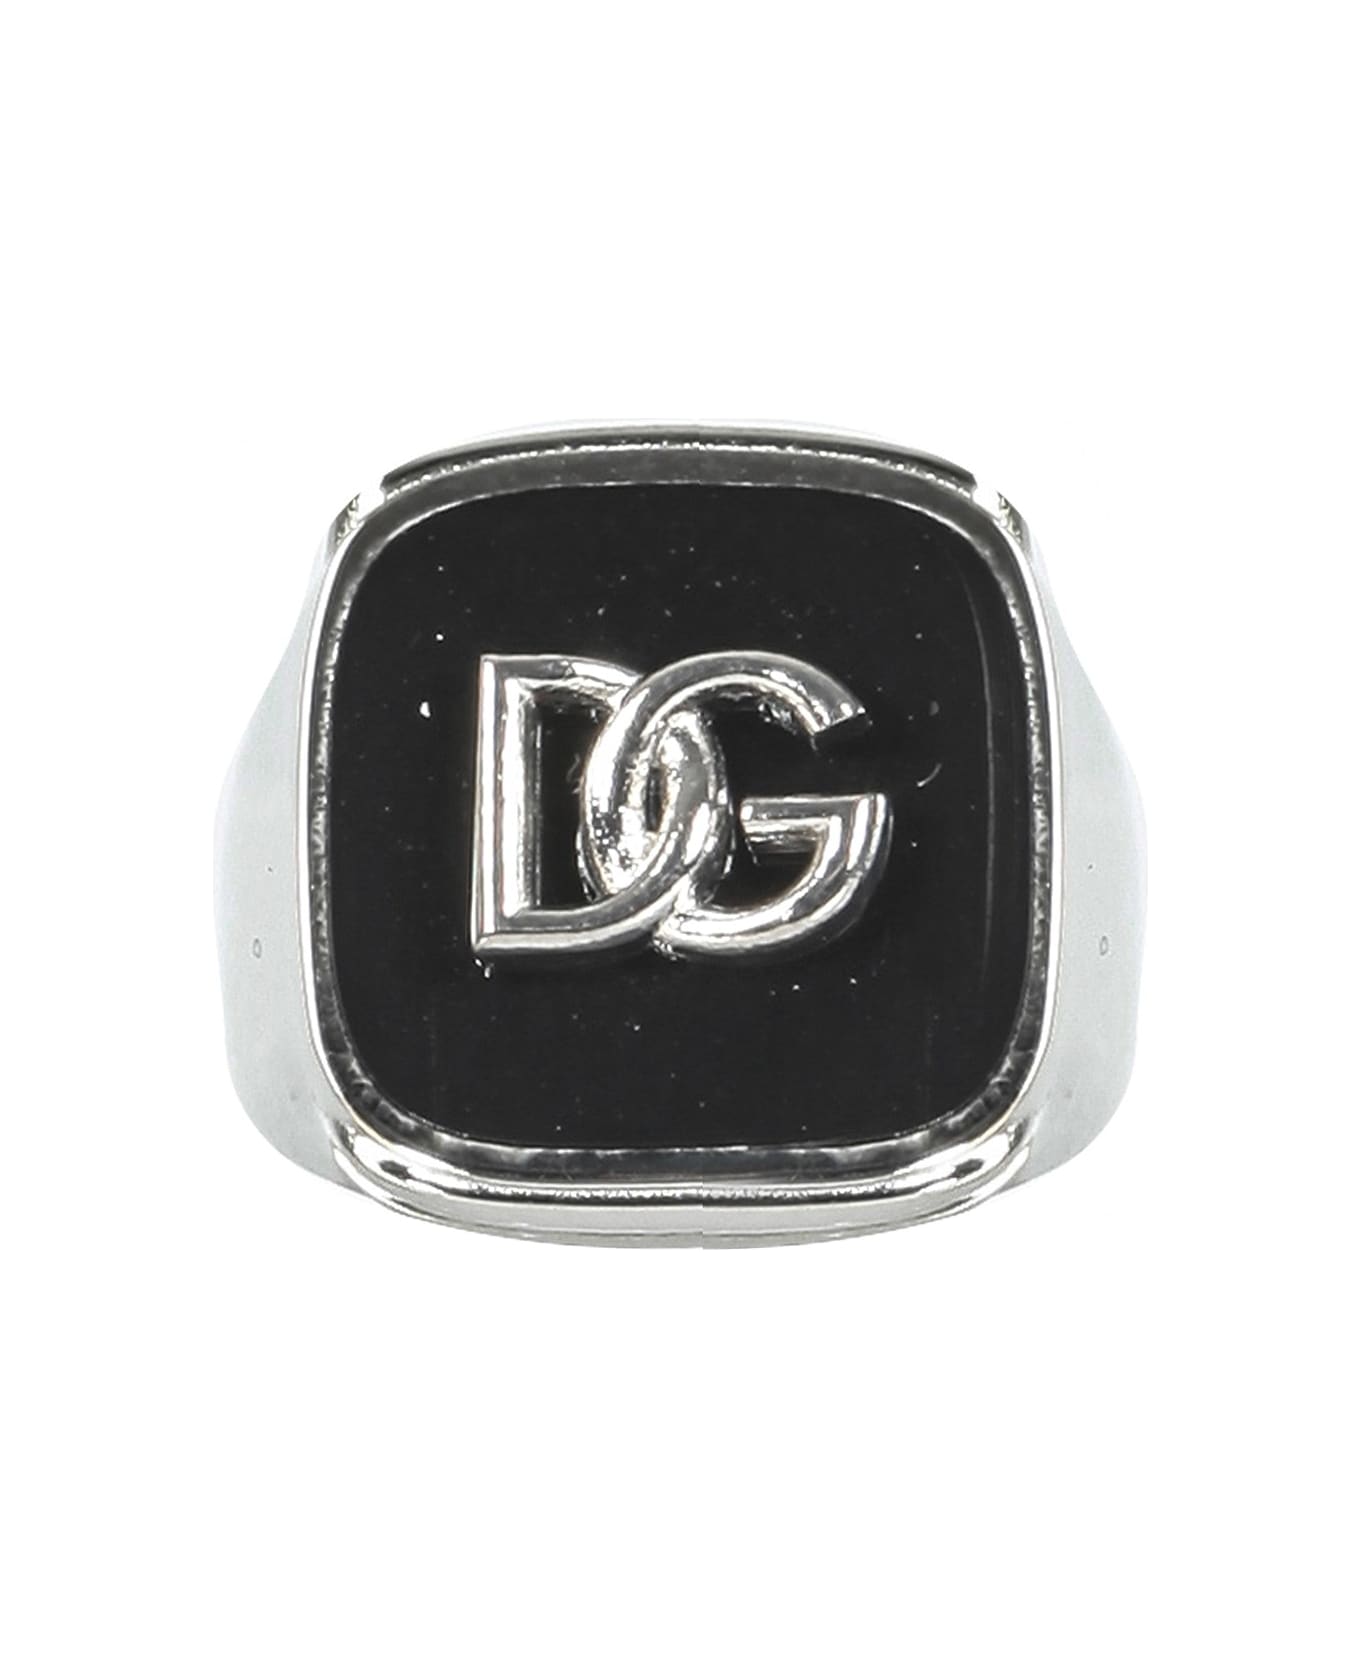 Dolce & Gabbana Man's Brass Ring With Logo - Metallic リング